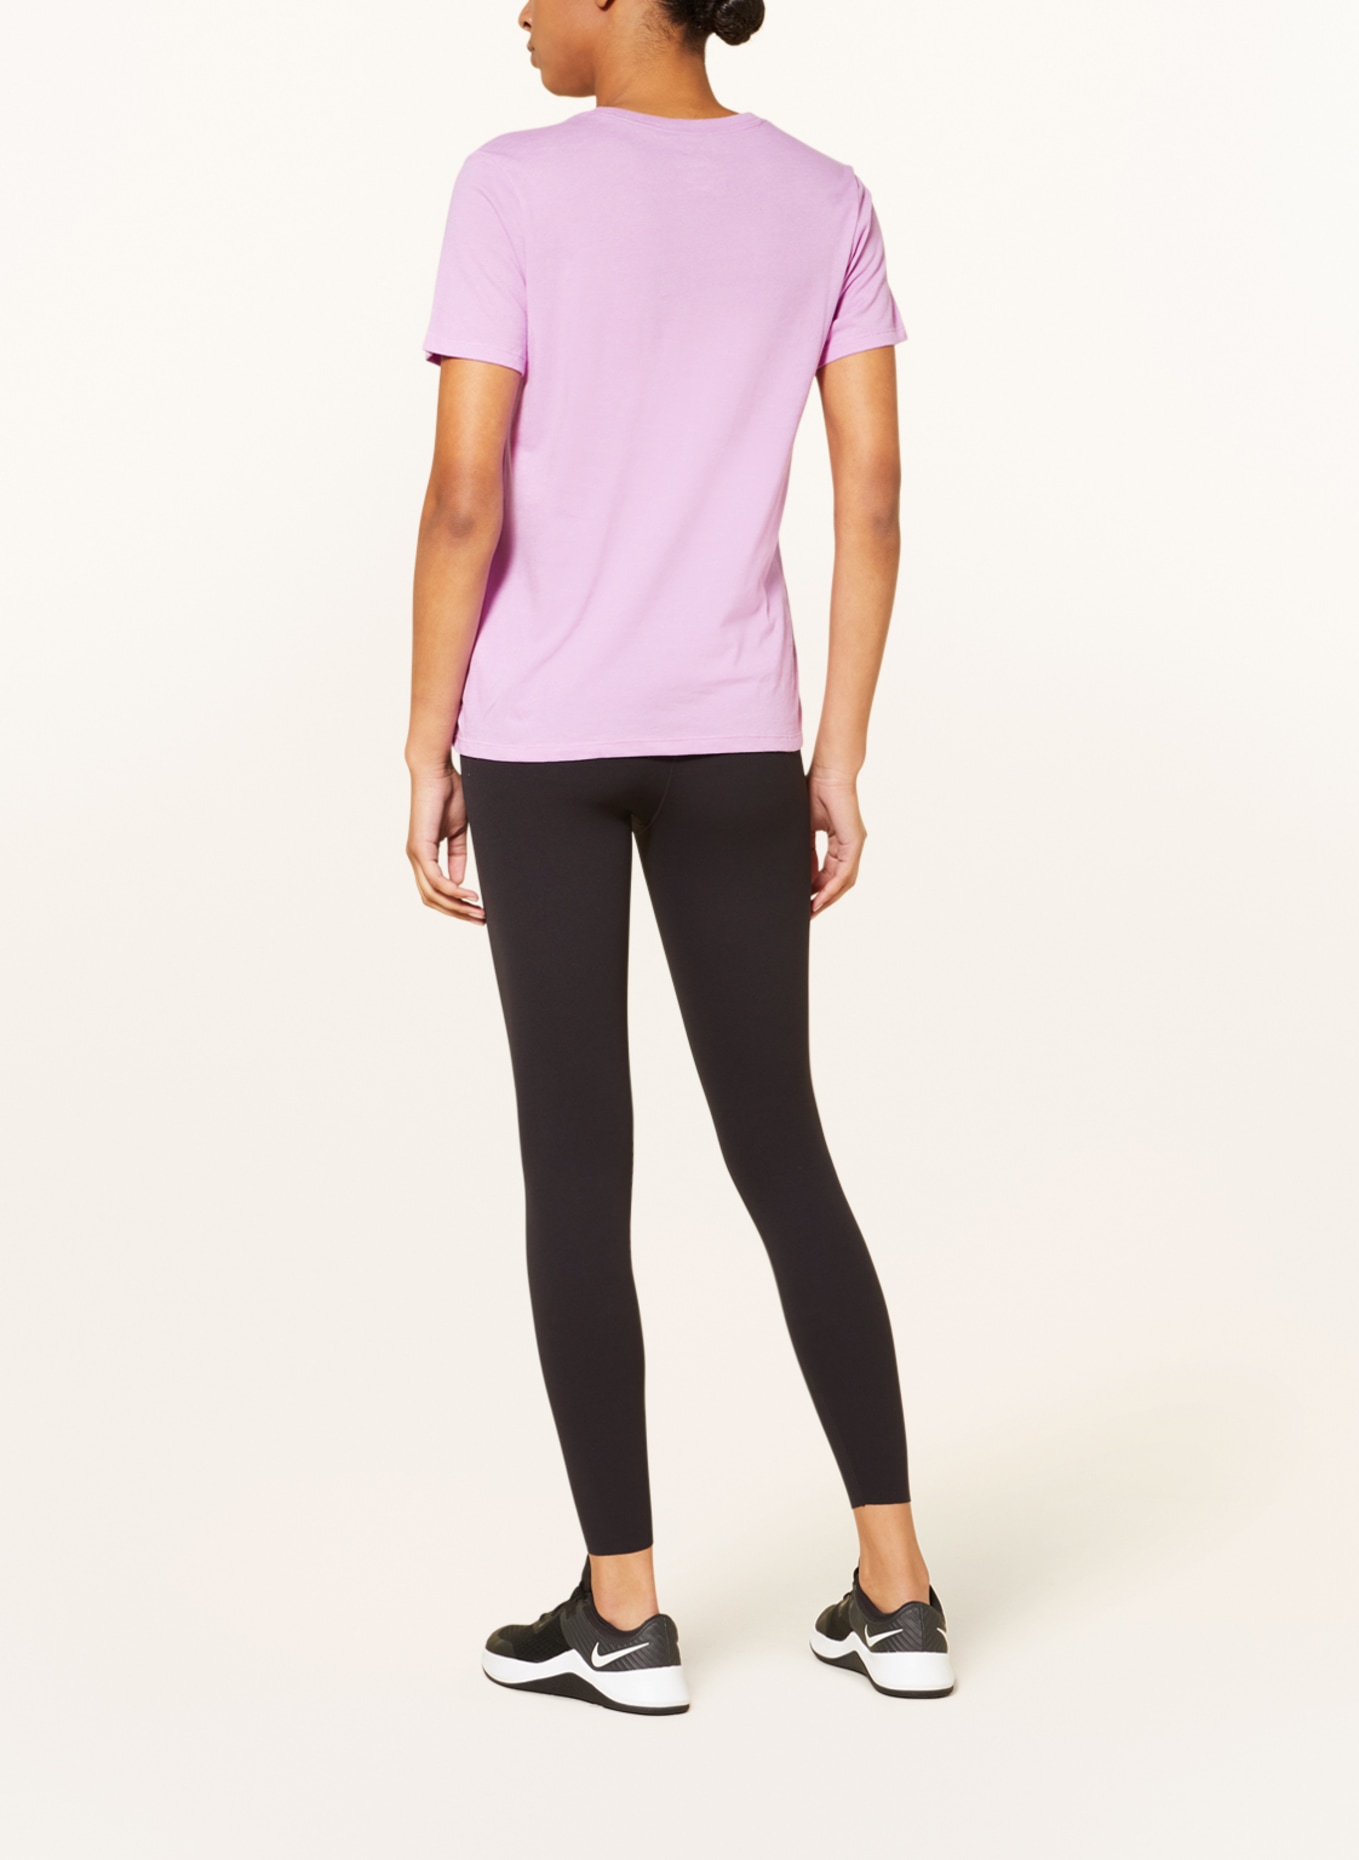 Nike T-shirt DRI-FIT SWOOSH, Color: LIGHT PURPLE (Image 3)